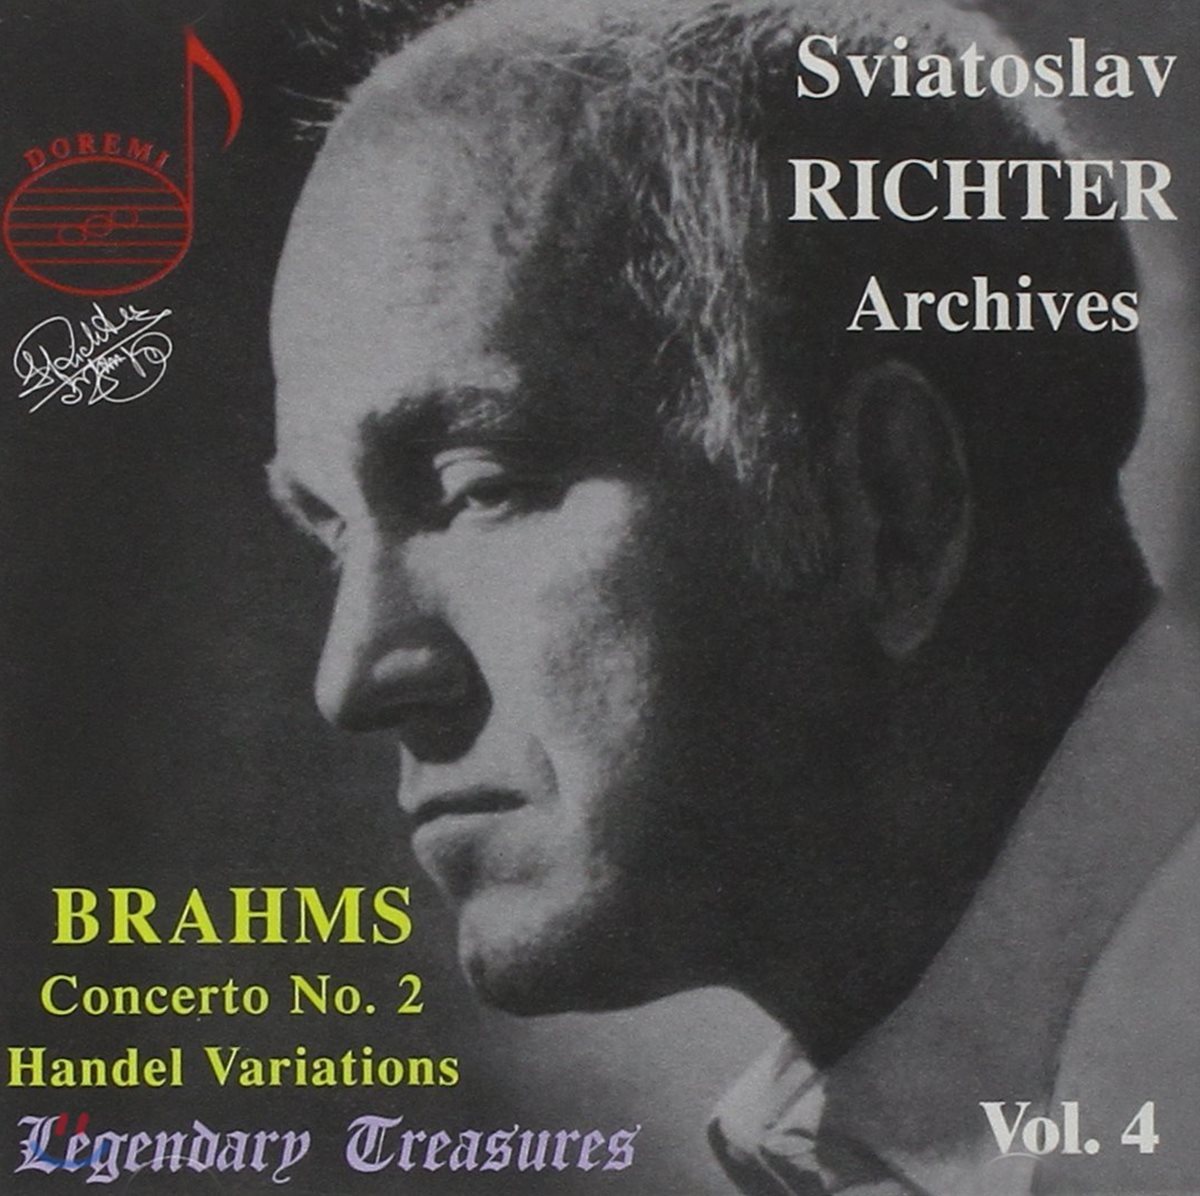 Sviatoslav Richter 브람스: 피아노 협주곡 2번, 헨델 주제의 변주곡과 푸가 